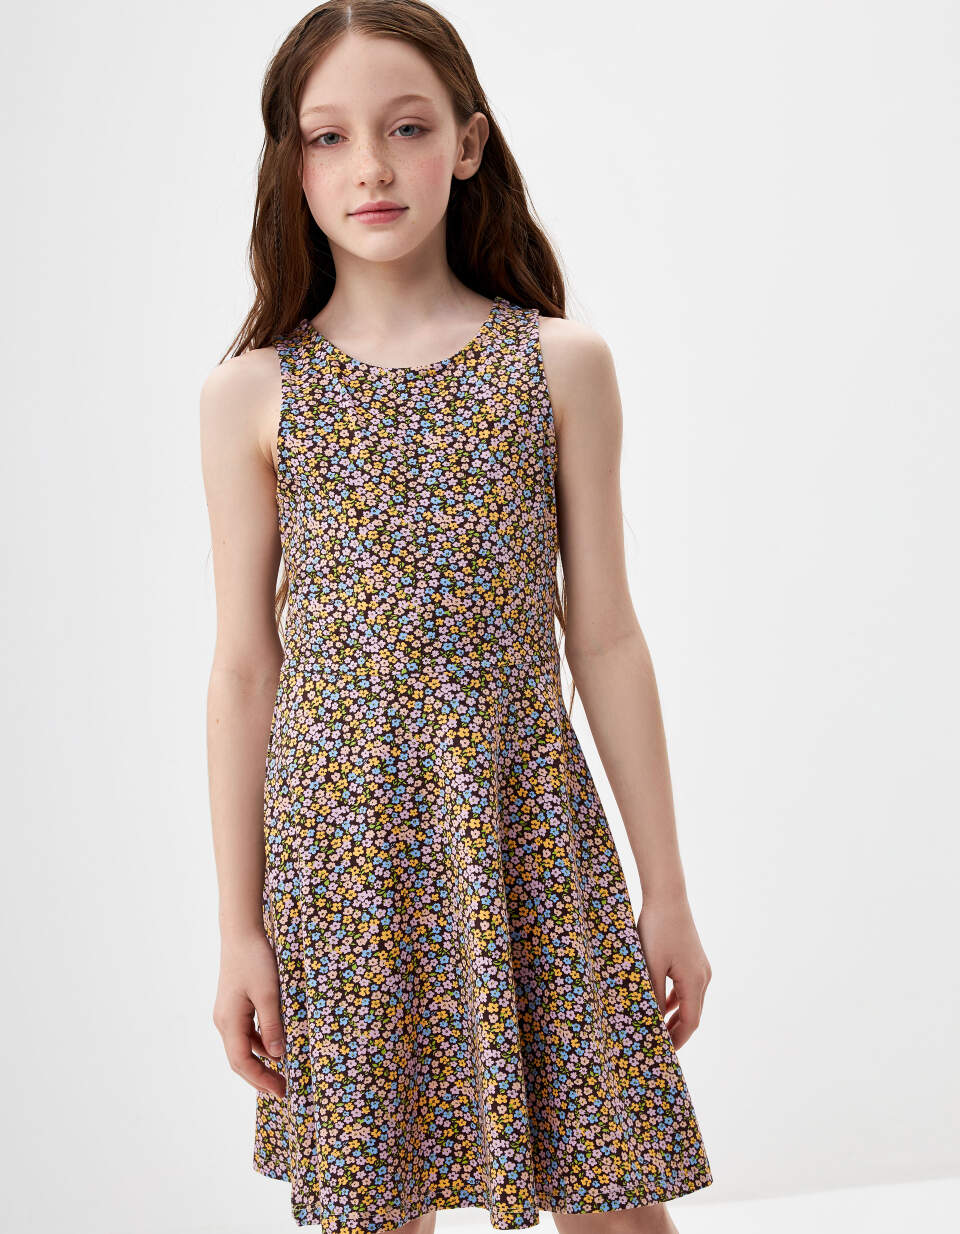 Трикотажное платье с принтом для девочек